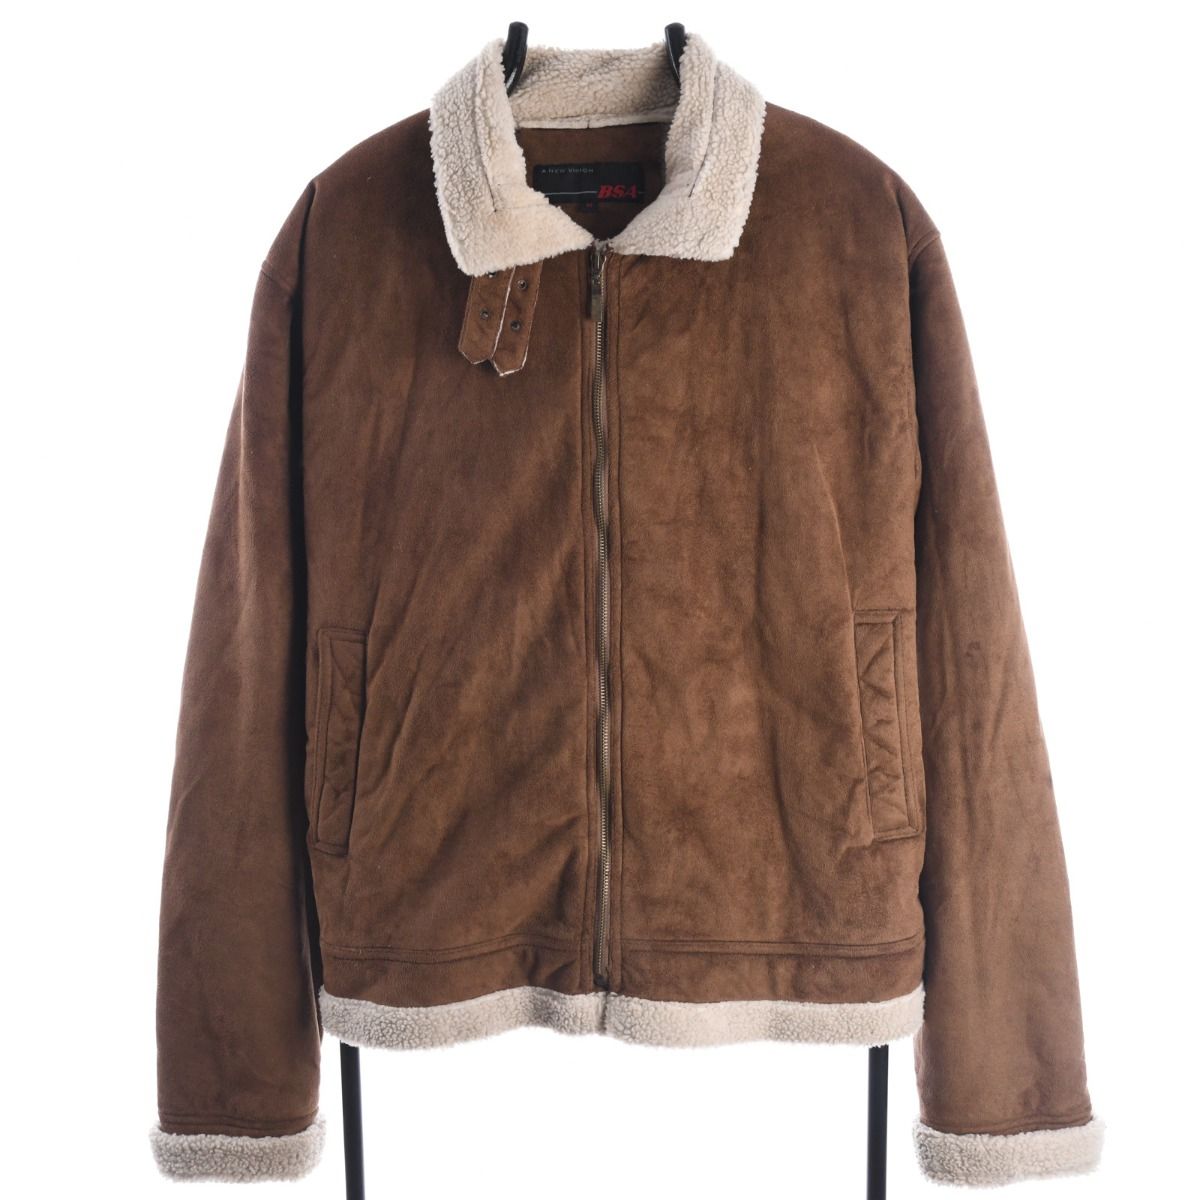 Vintage 1990s Shearling Jacket